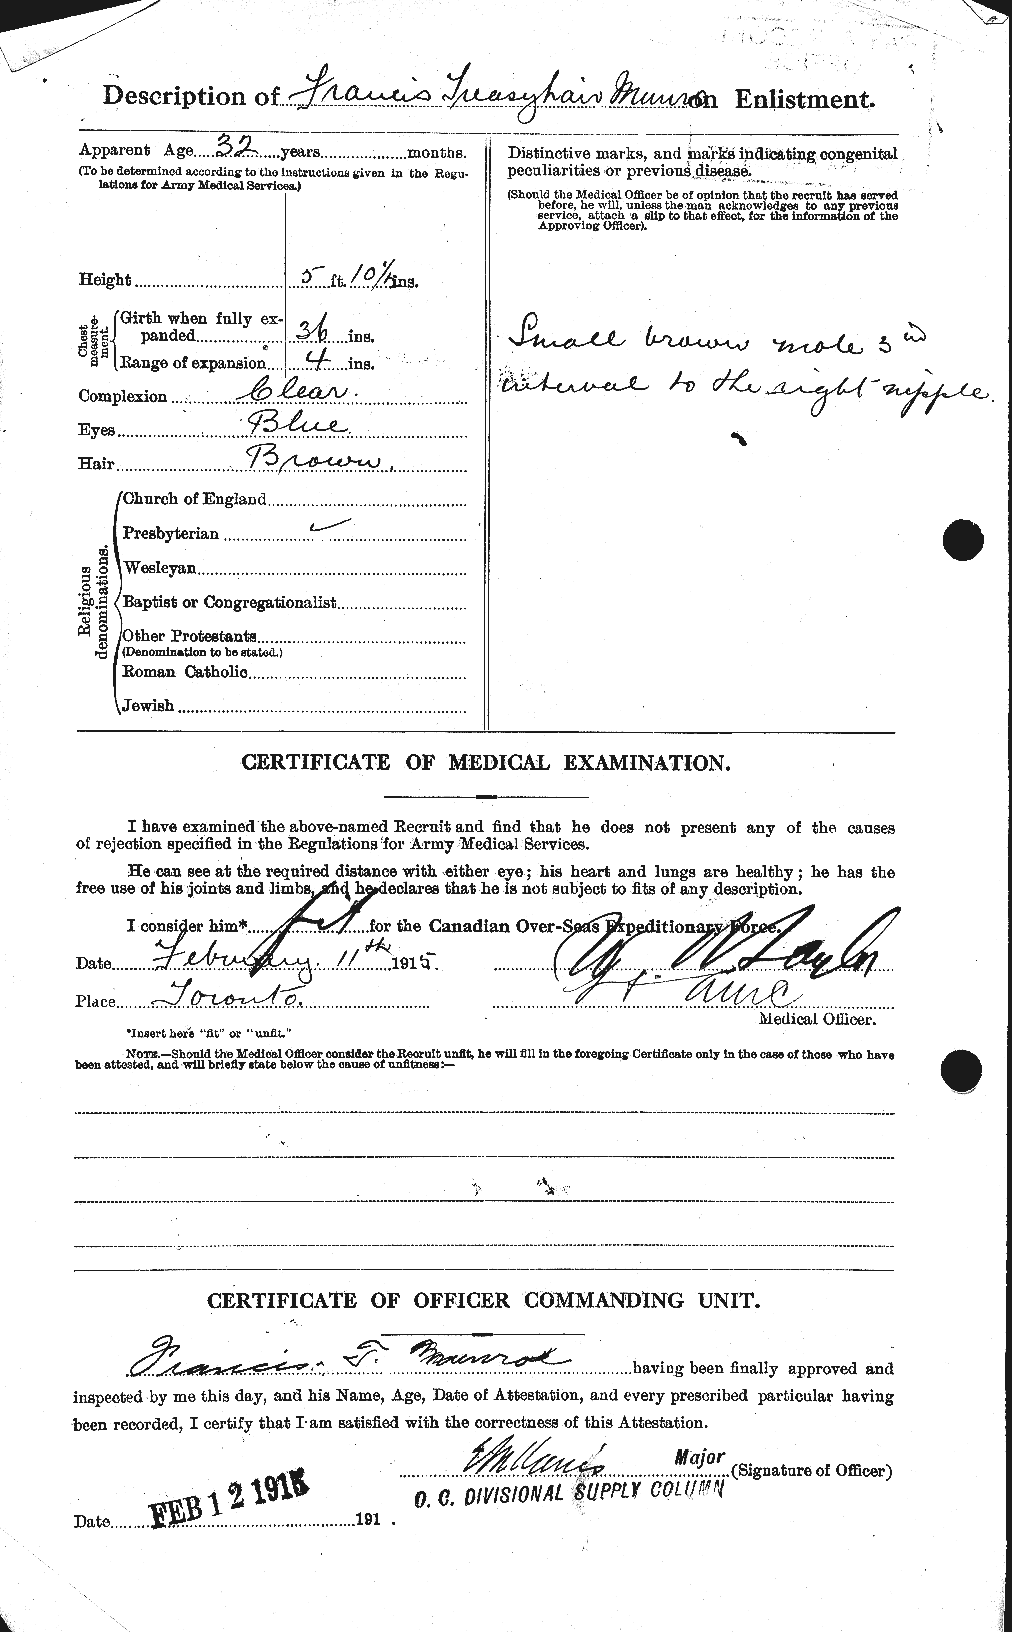 Dossiers du Personnel de la Première Guerre mondiale - CEC 513825b